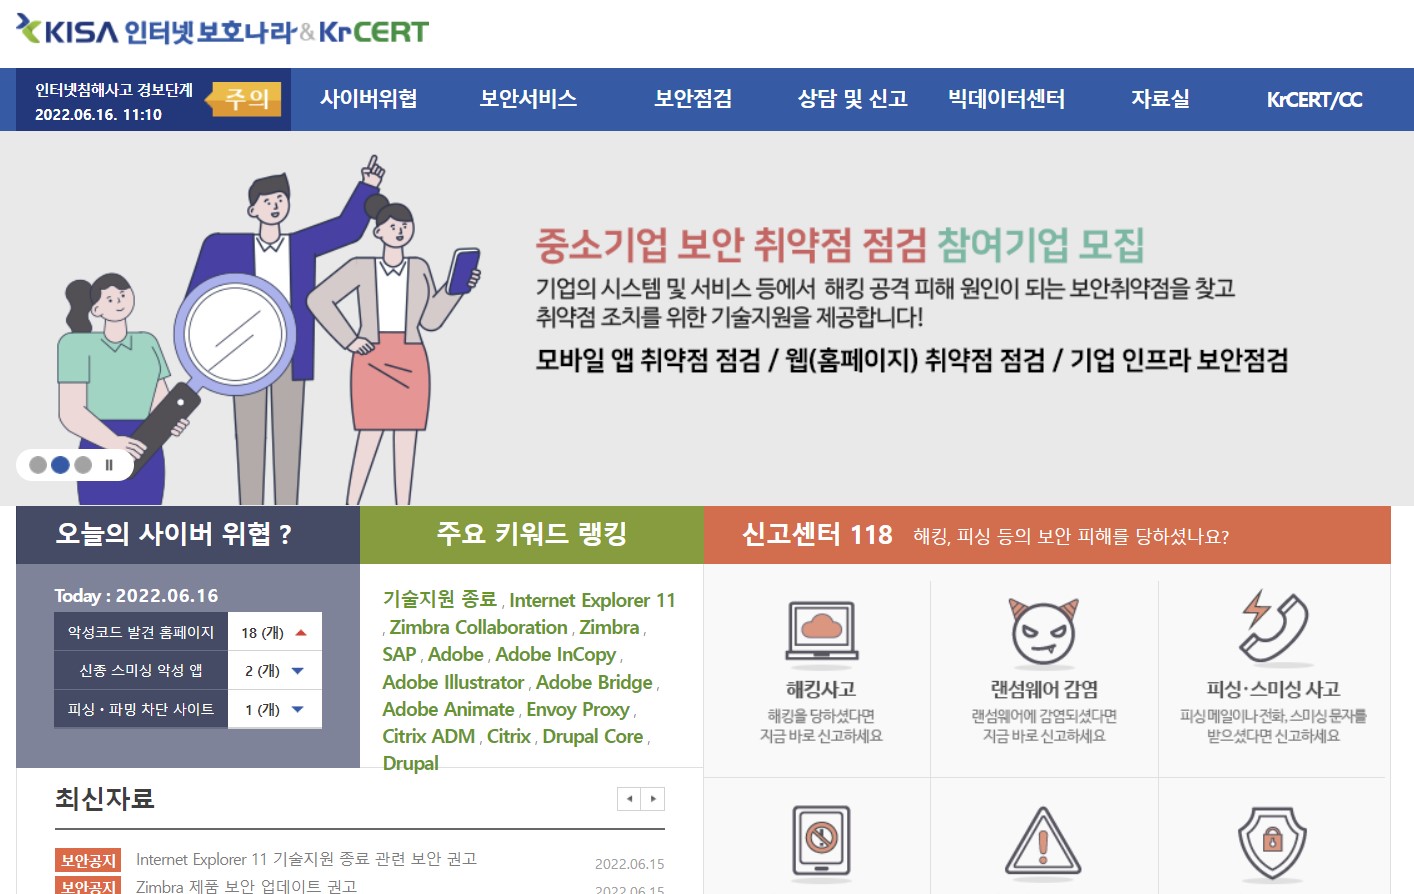 한국인터넷진흥원(KISA) 보호나라&KrCERT/CC 누리집. 인터넷 익스플로러 기술 지원 종료에 따른 보안조치 사항을 안내받을 수 있다.